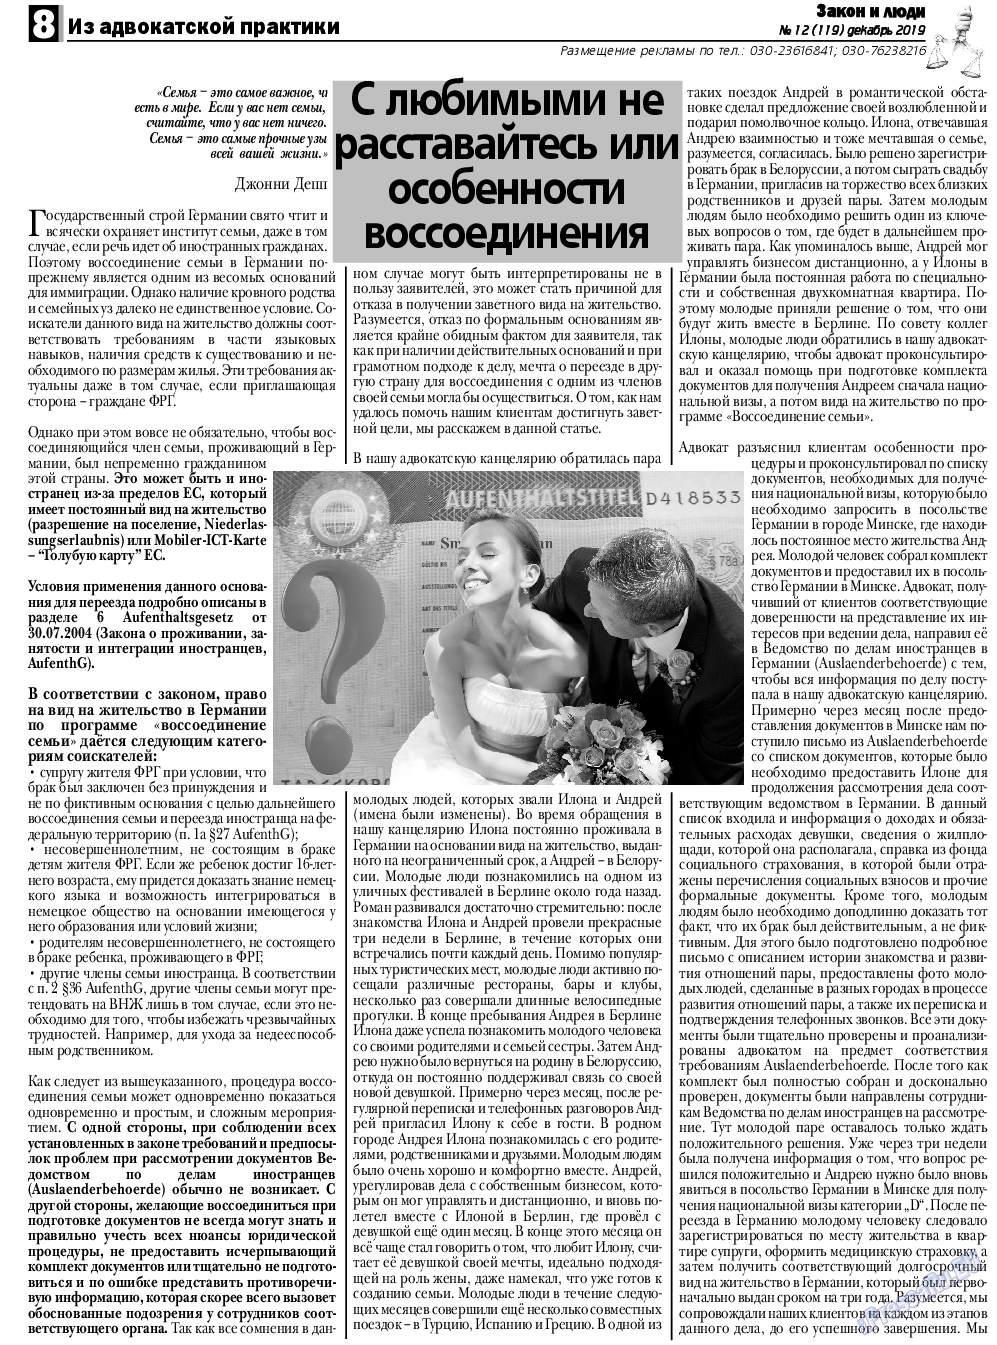 Закон и люди, газета. 2019 №12 стр.8